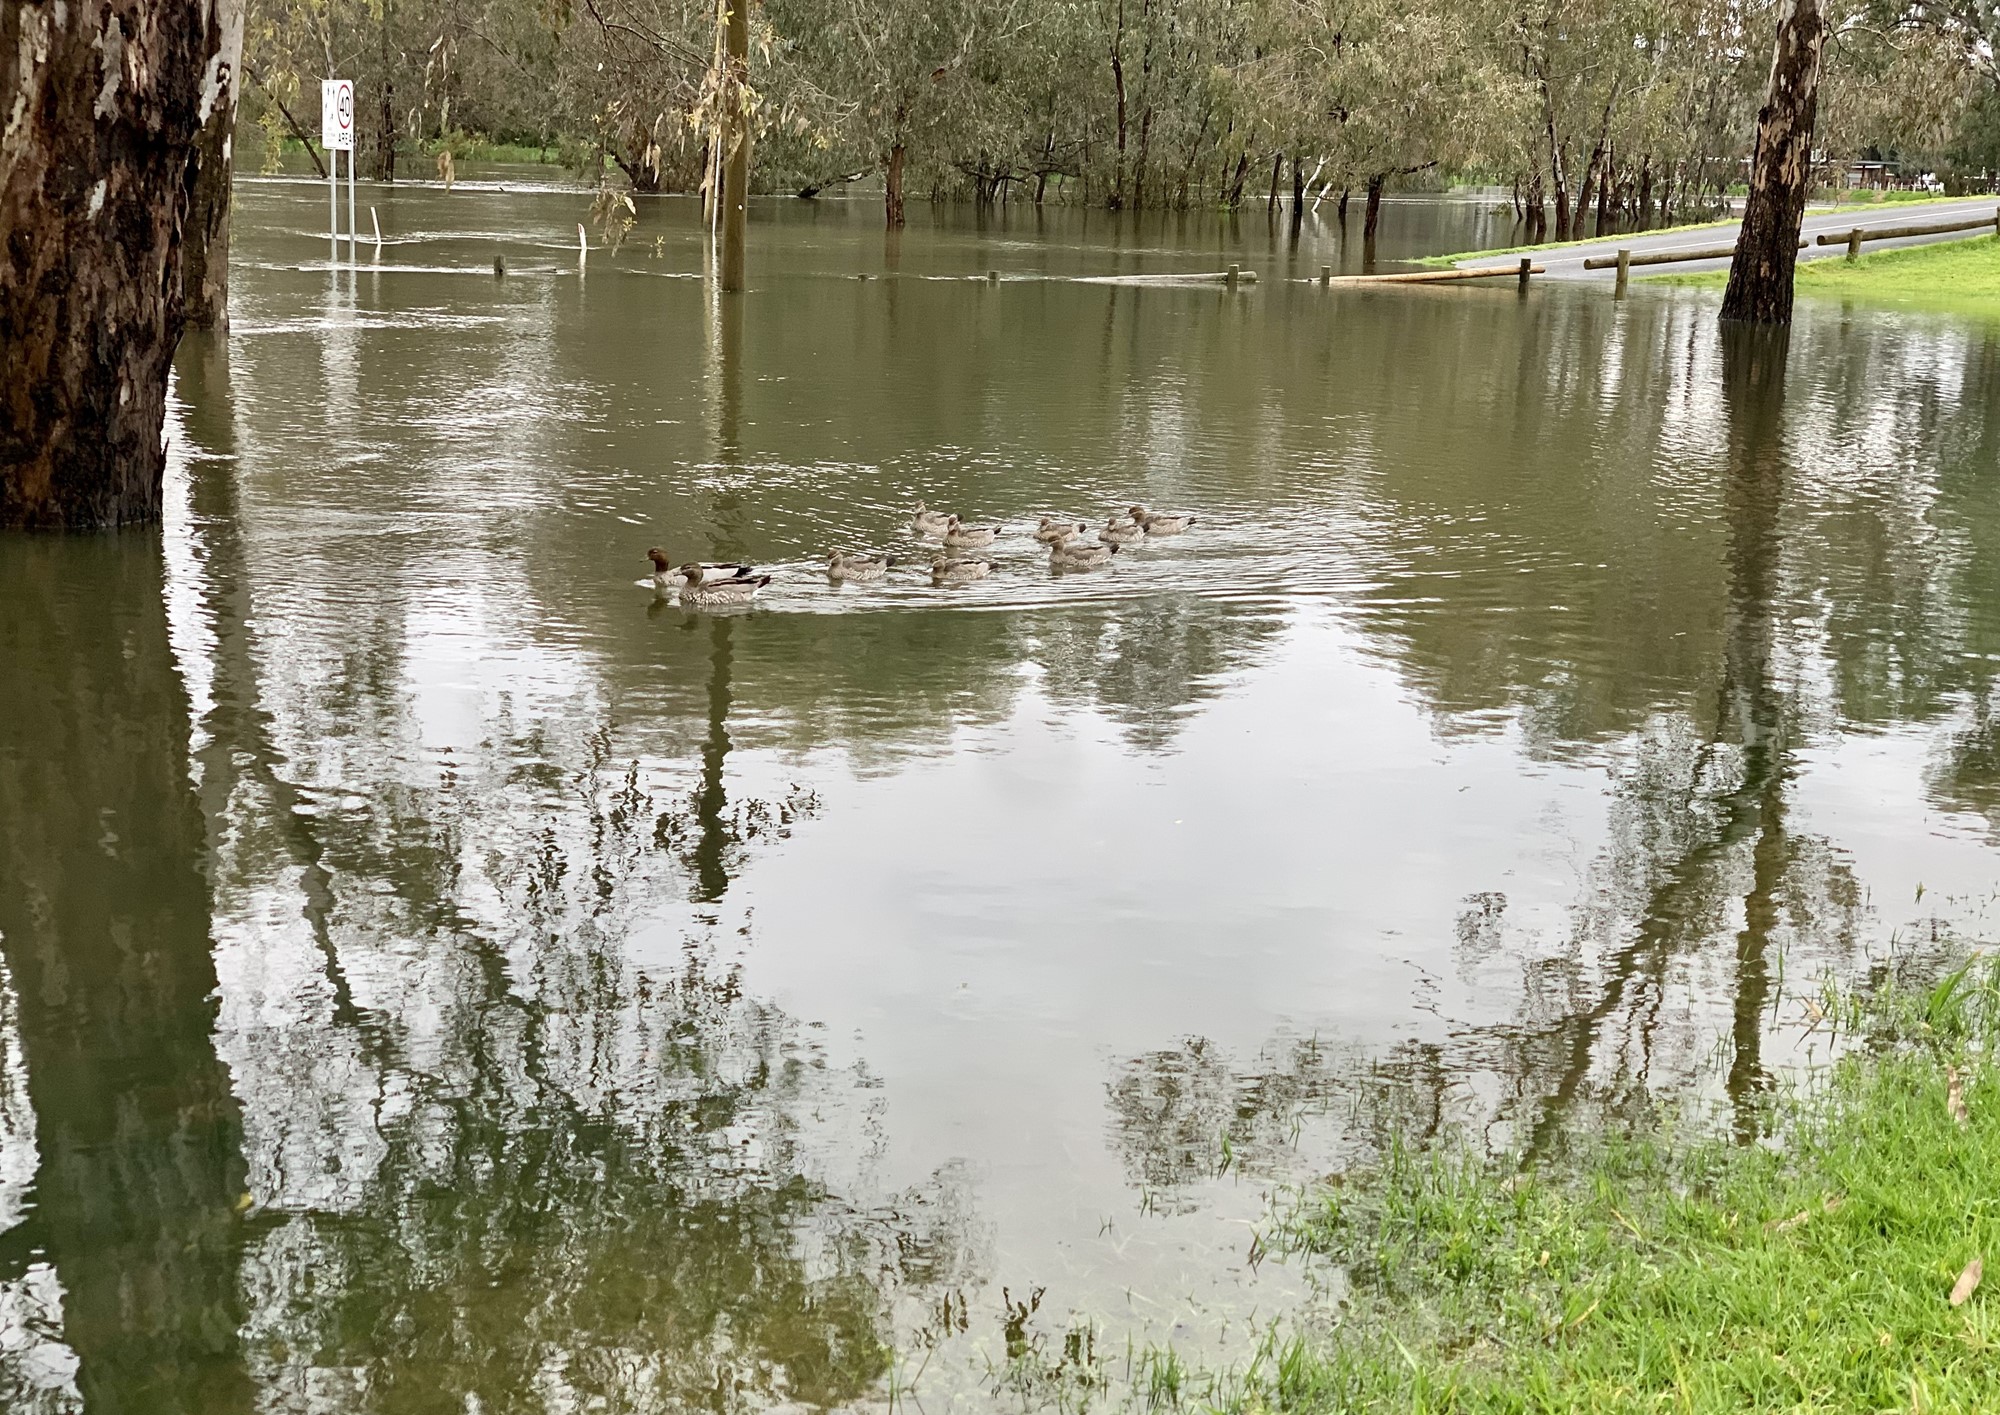 Ducks swim in flood waters